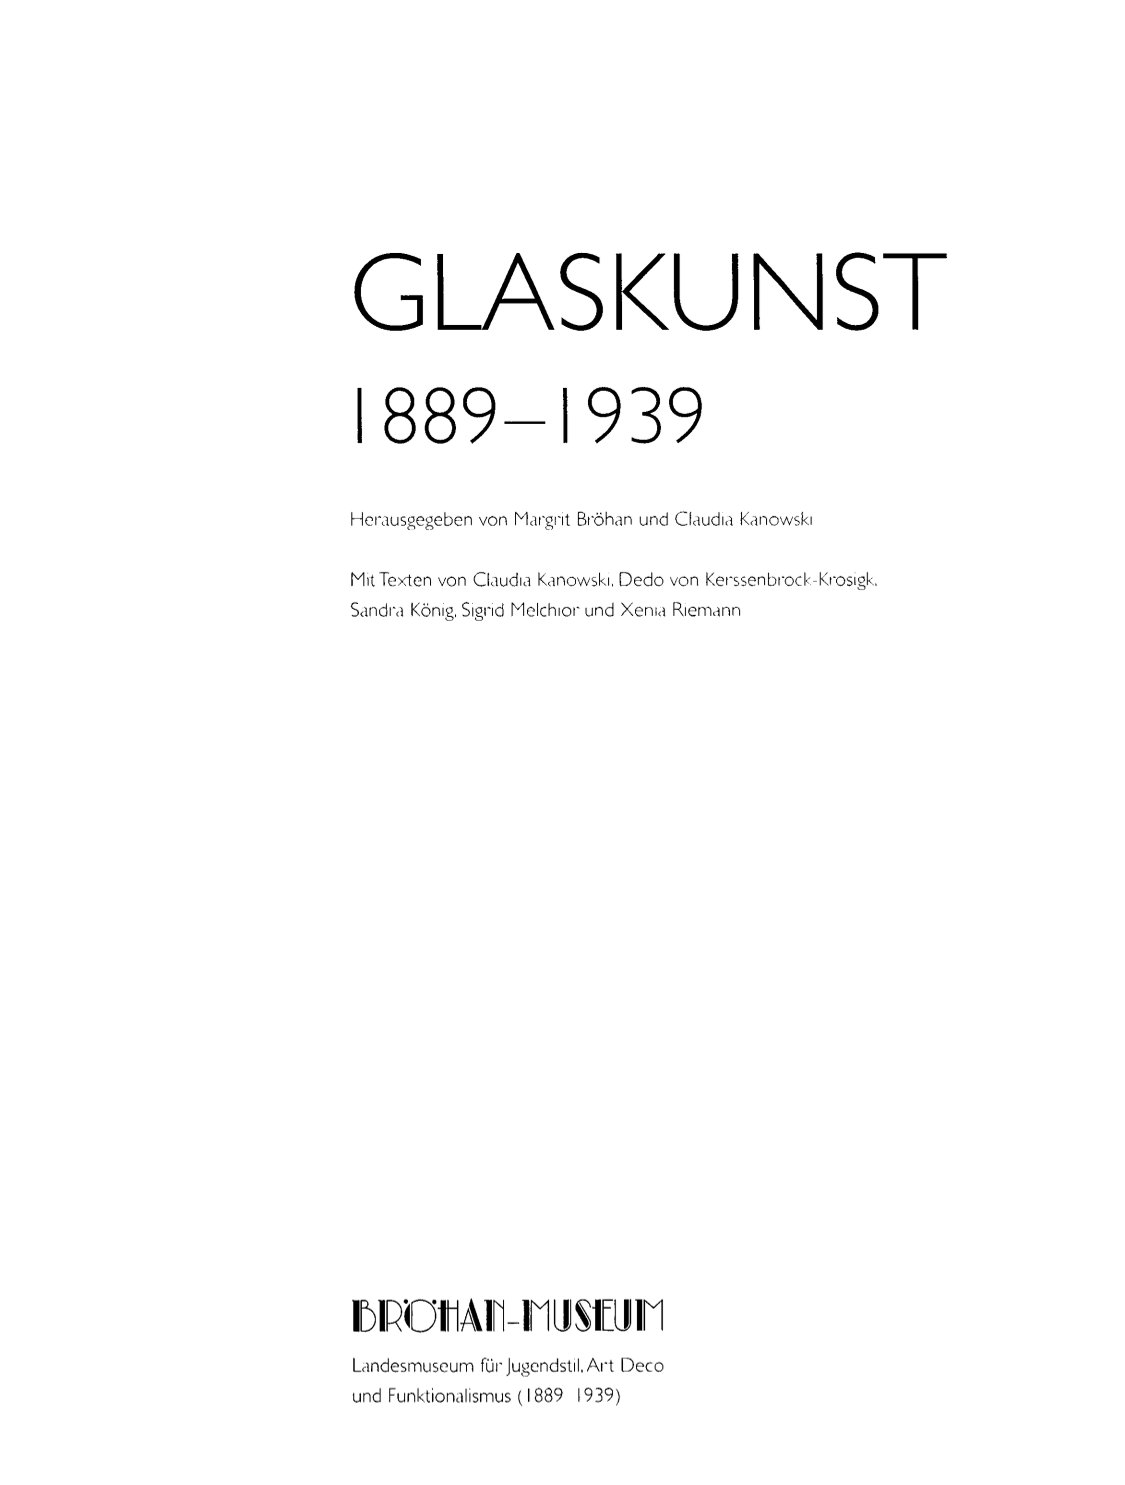 Glaskunst 1889-1939